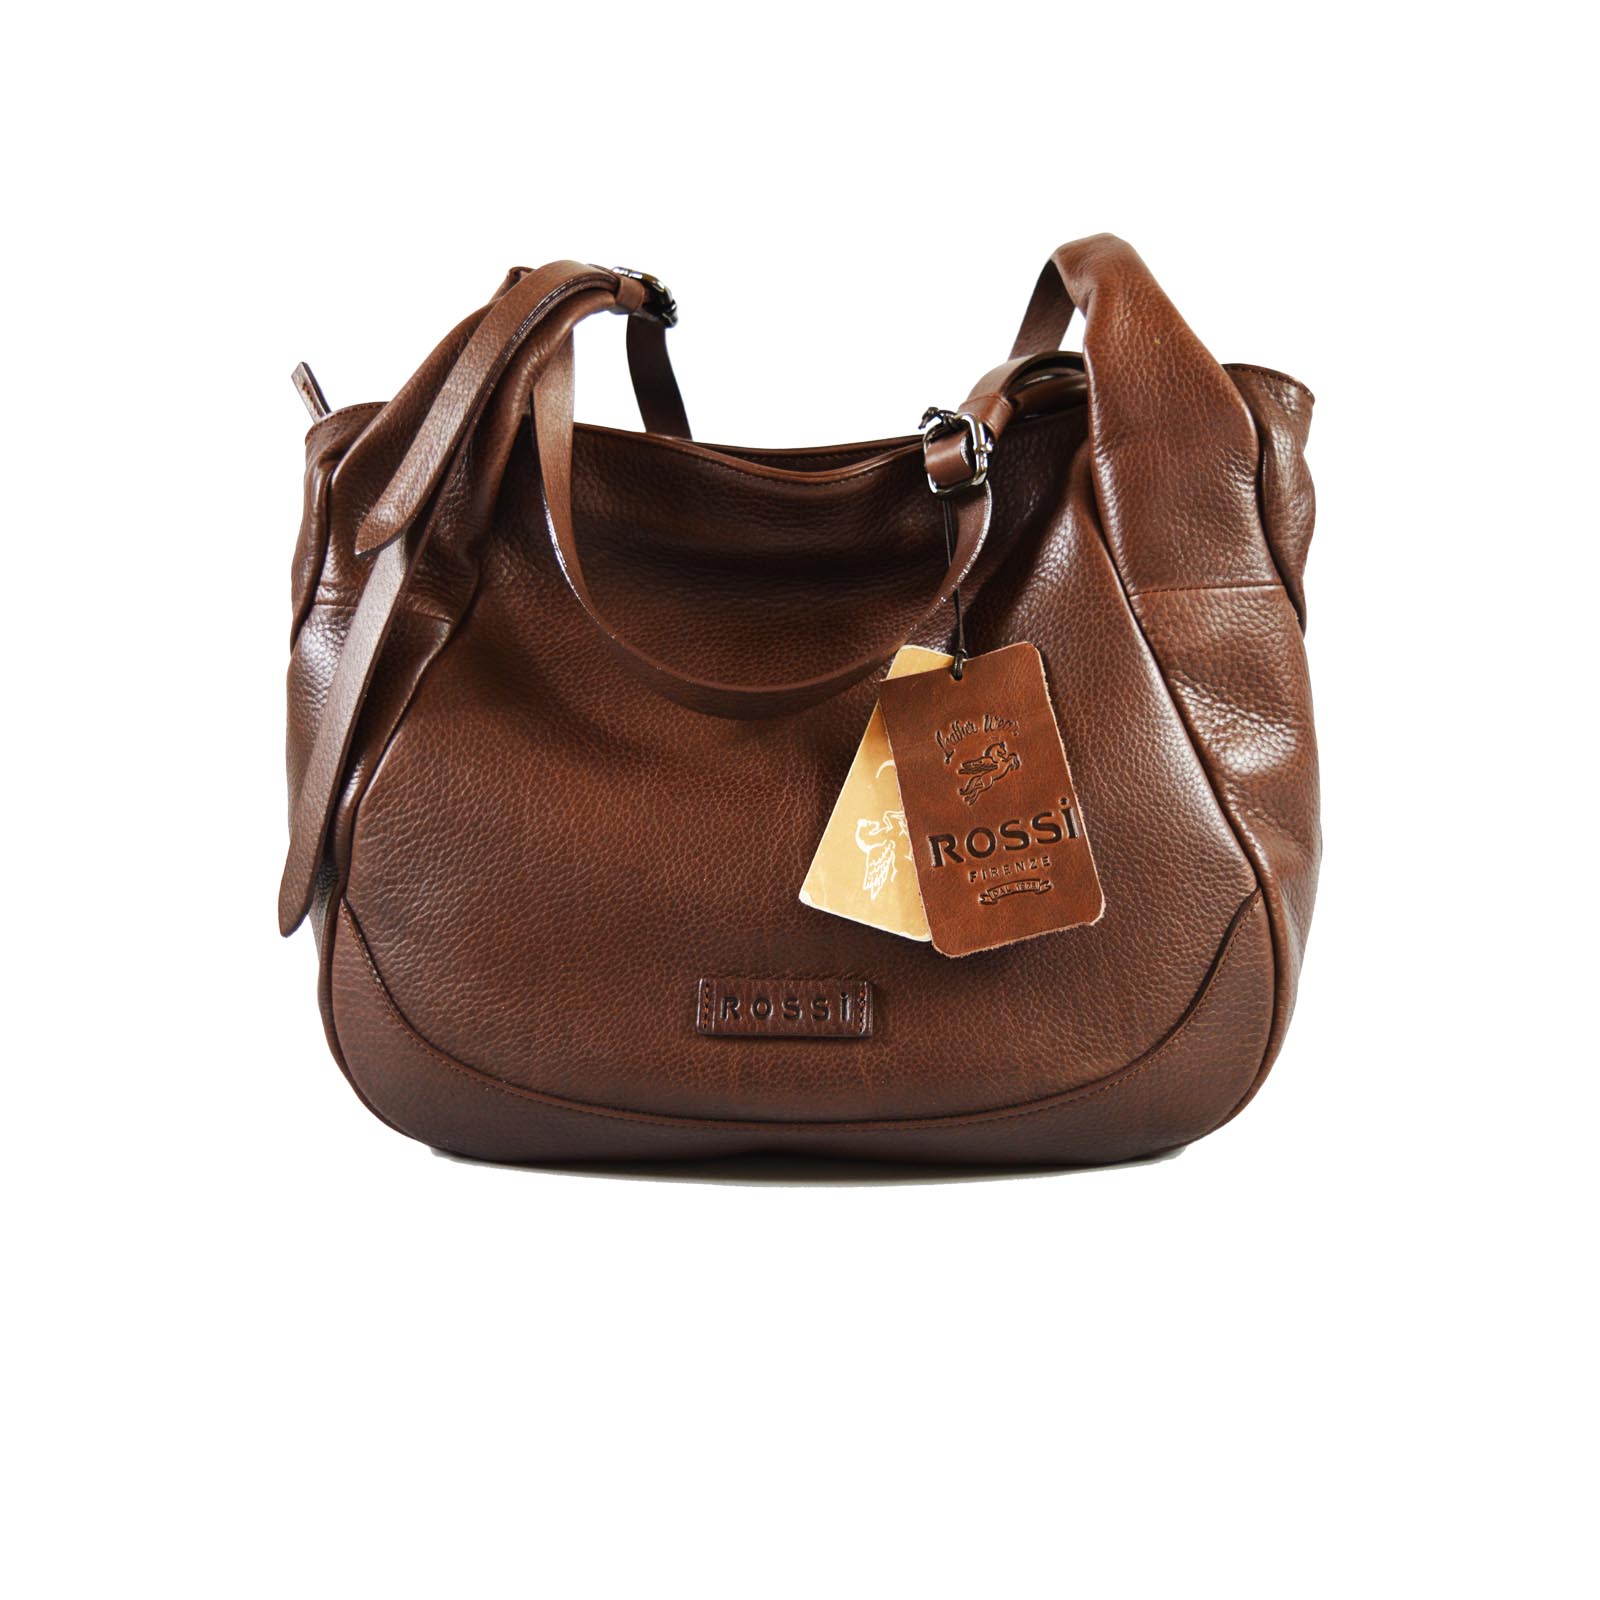 Rossi Saddle Bag - Vintage Distressed Leather – Patricia Nash